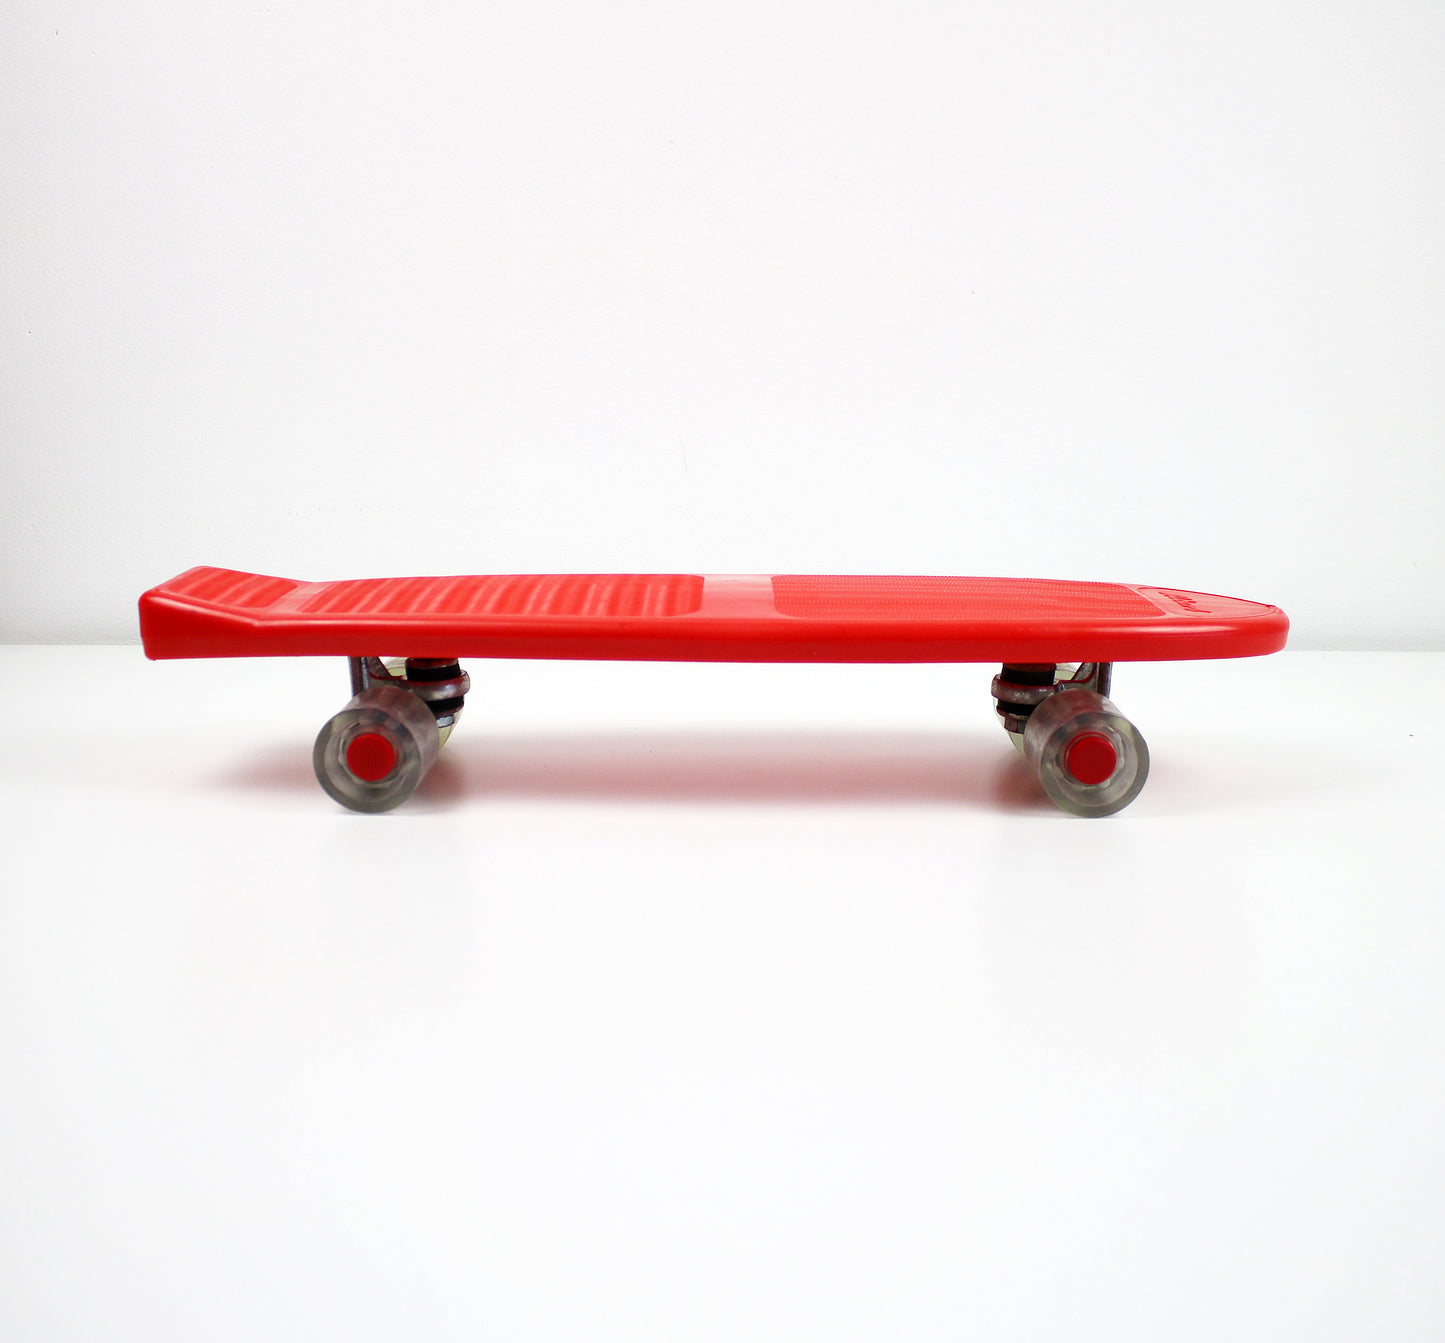 1980s West German Albert skateboard - red plastic unused